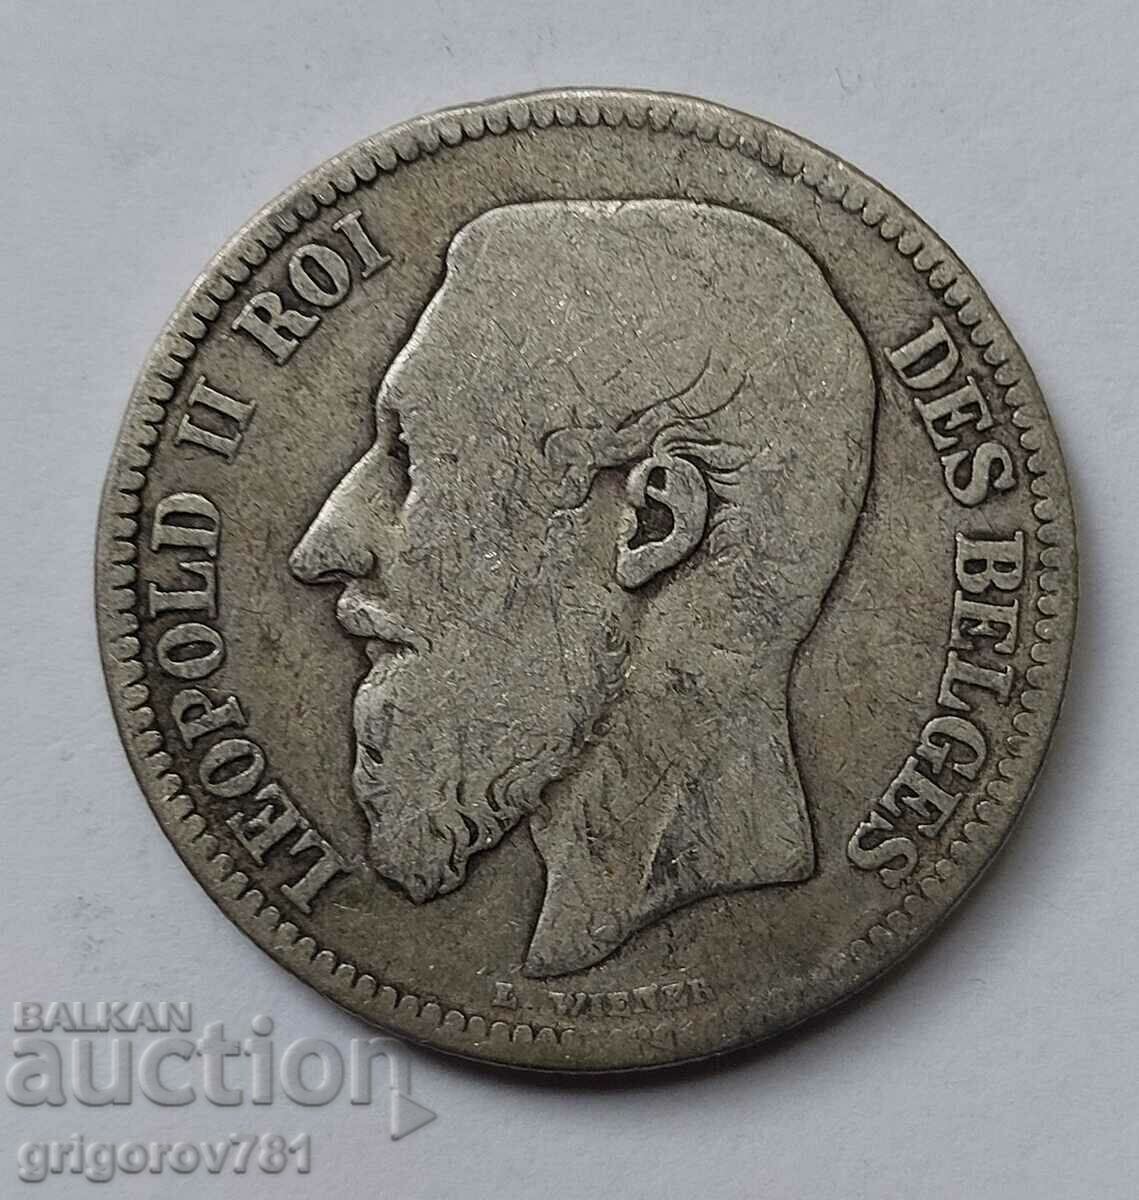 2 Francs Silver Belgium 1867 - Silver Coin #164